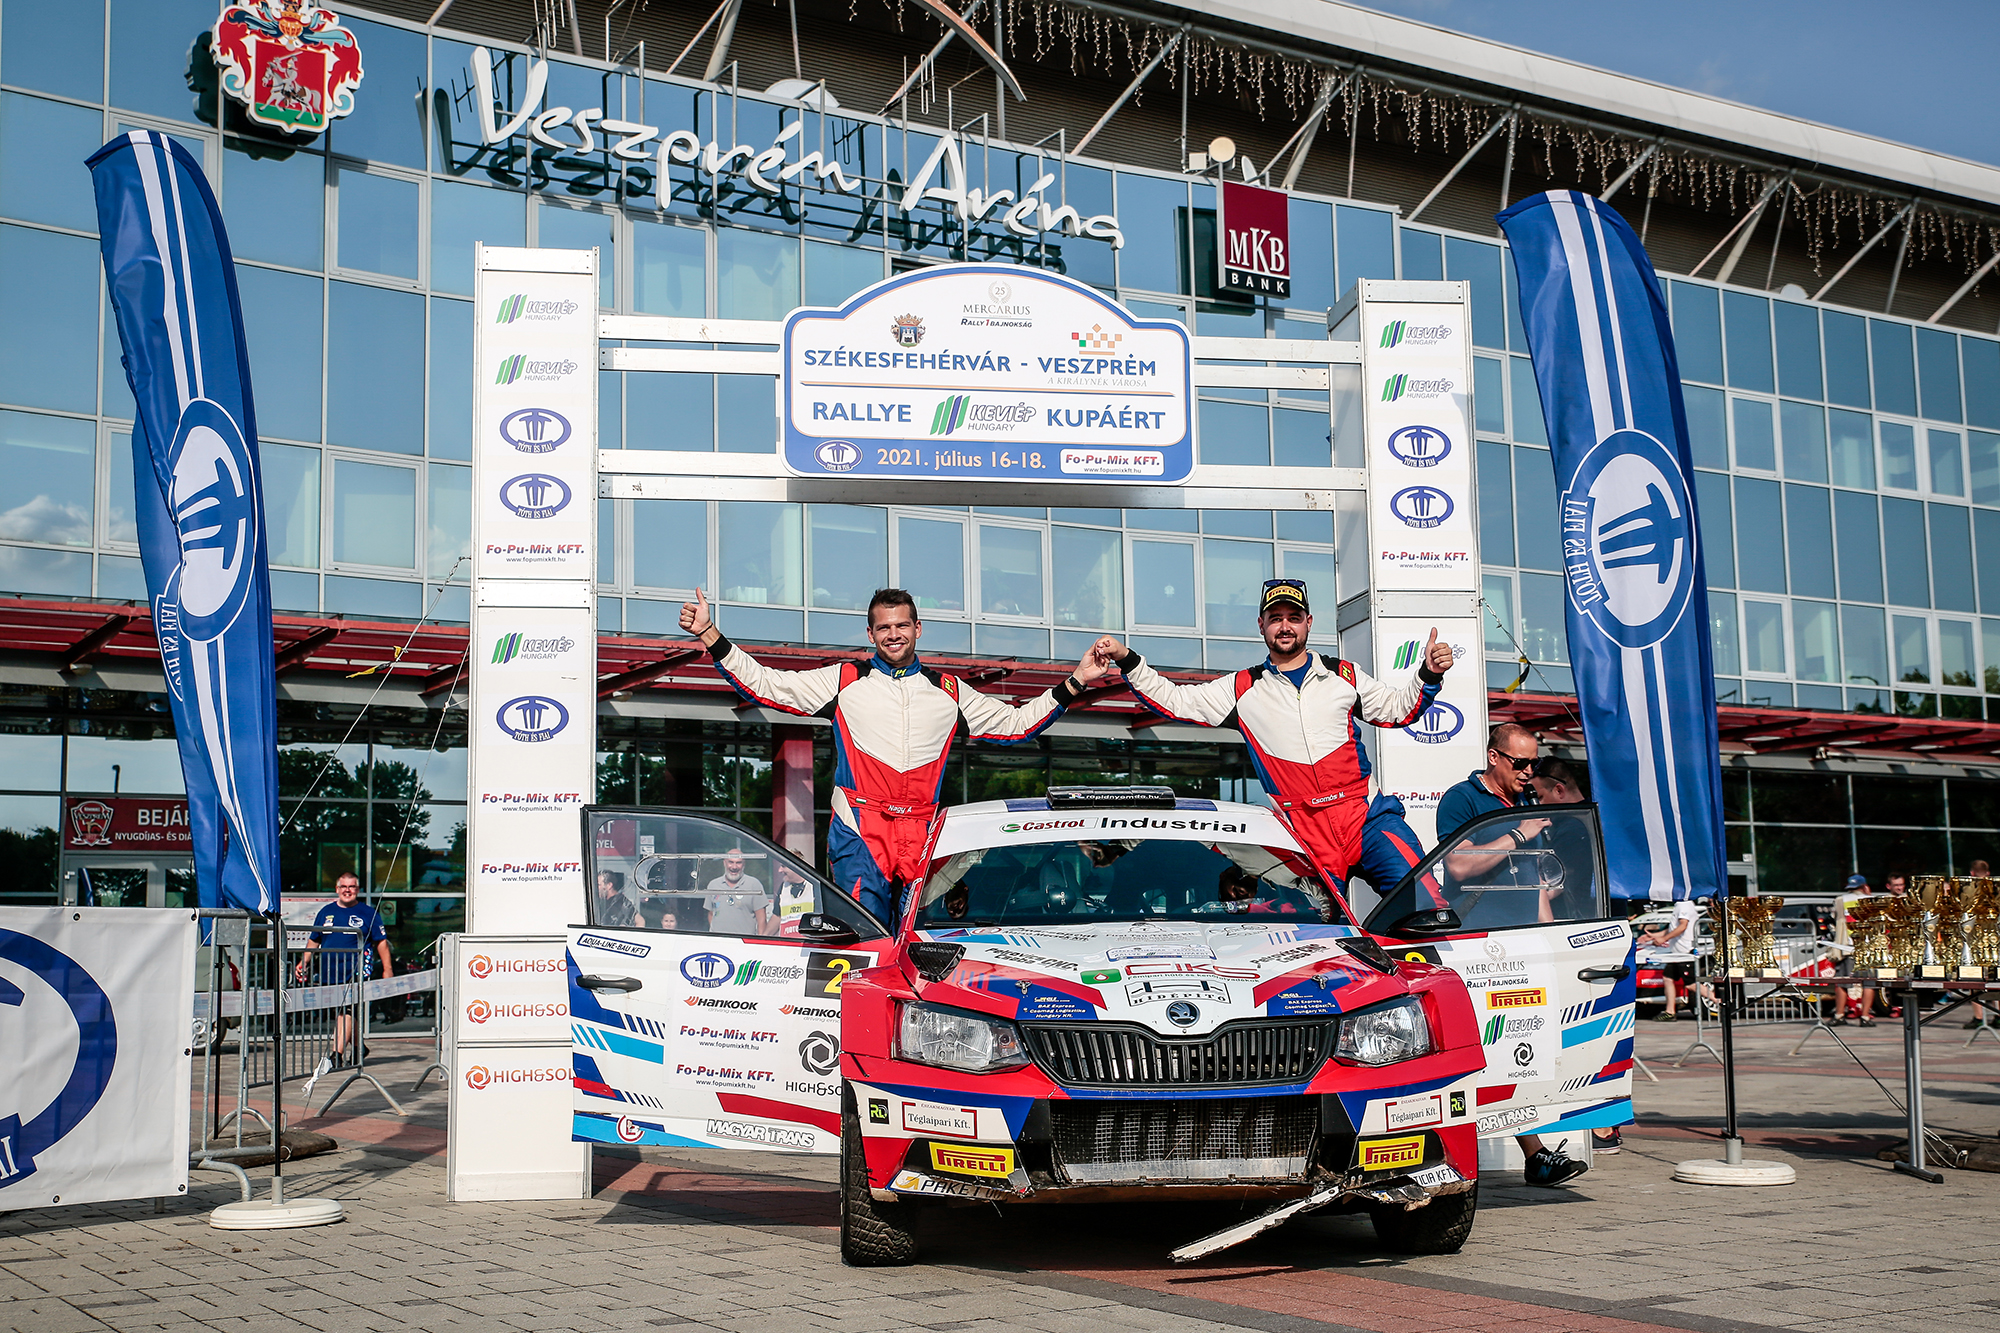 Csomós Miklós, Nagy Attila páros nyerte a Székesfehérvár-Veszprém Rallye-t a Skoda Fabia R5-tel